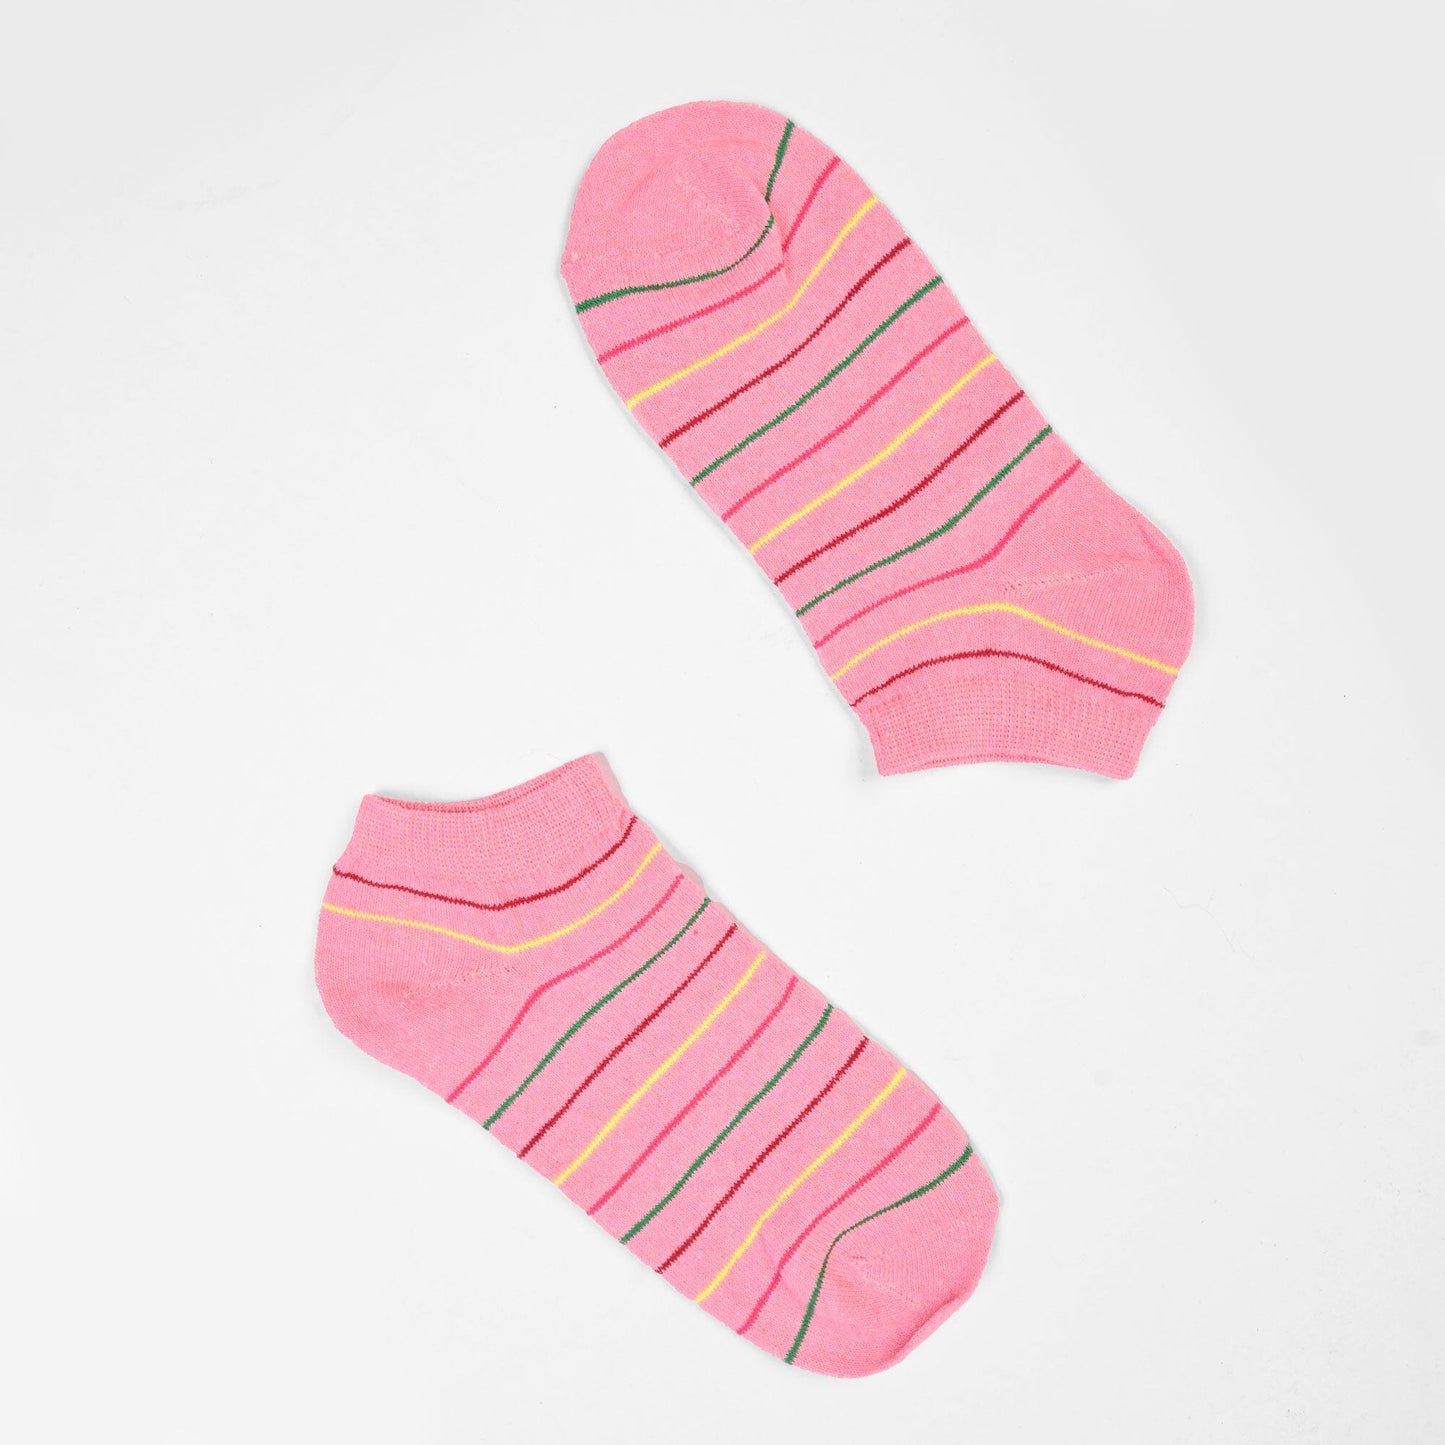 Rauma Women's Classic Anklet Socks Socks SRL Baby Pink D2 EUR 35-40